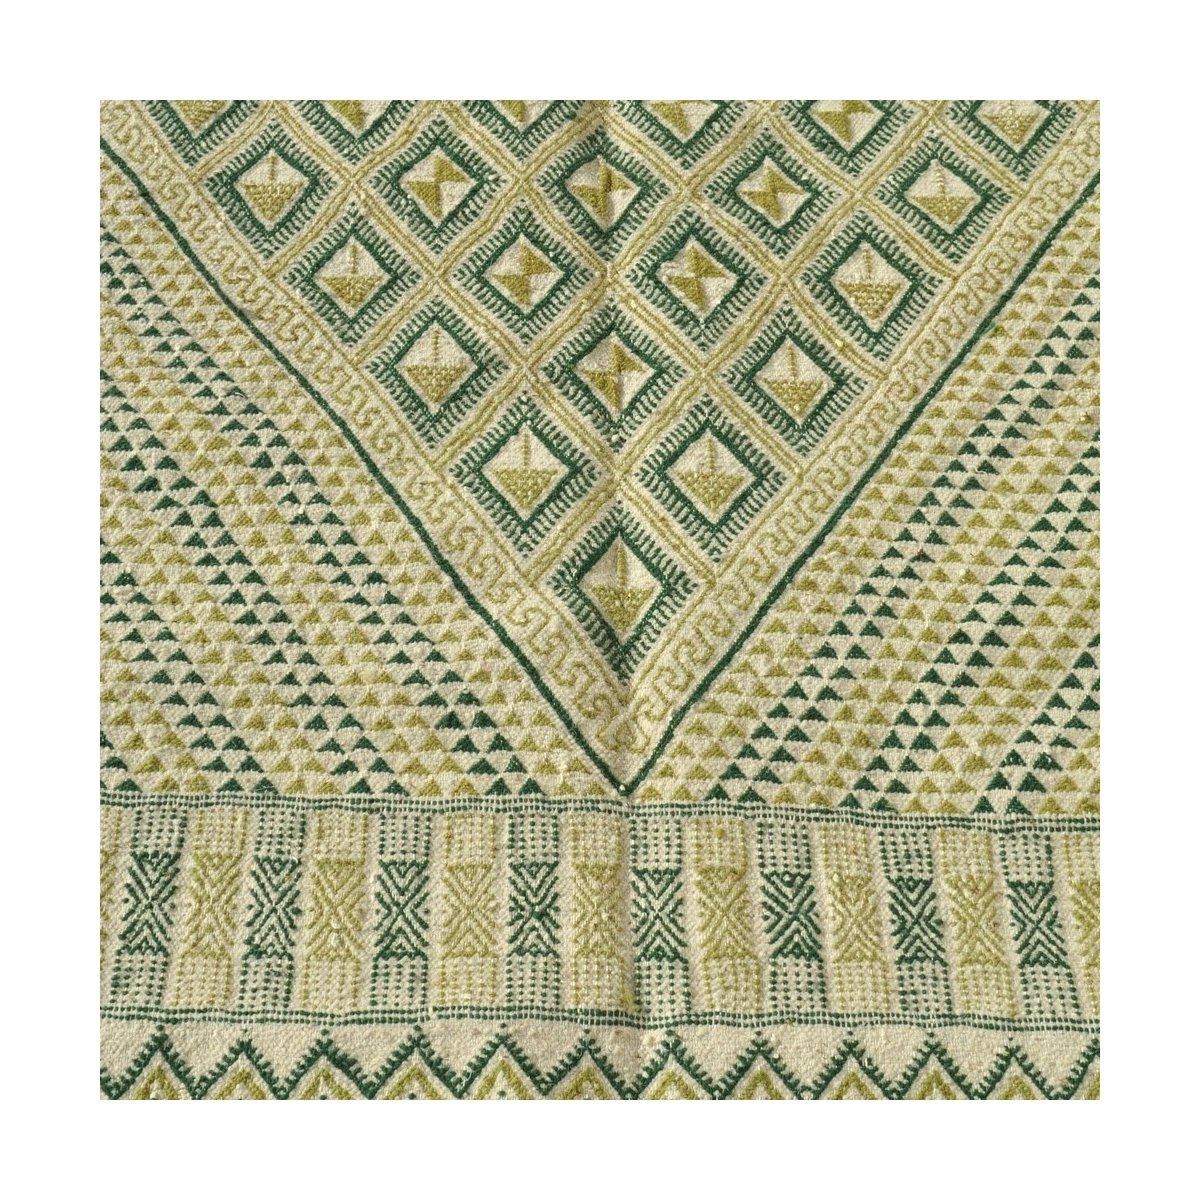 Berber carpet Large Rug Margoum Nebtaa 160x245 White/Green (Handmade, Wool, Tunisia) Tunisian margoum rug from the city of Kairo